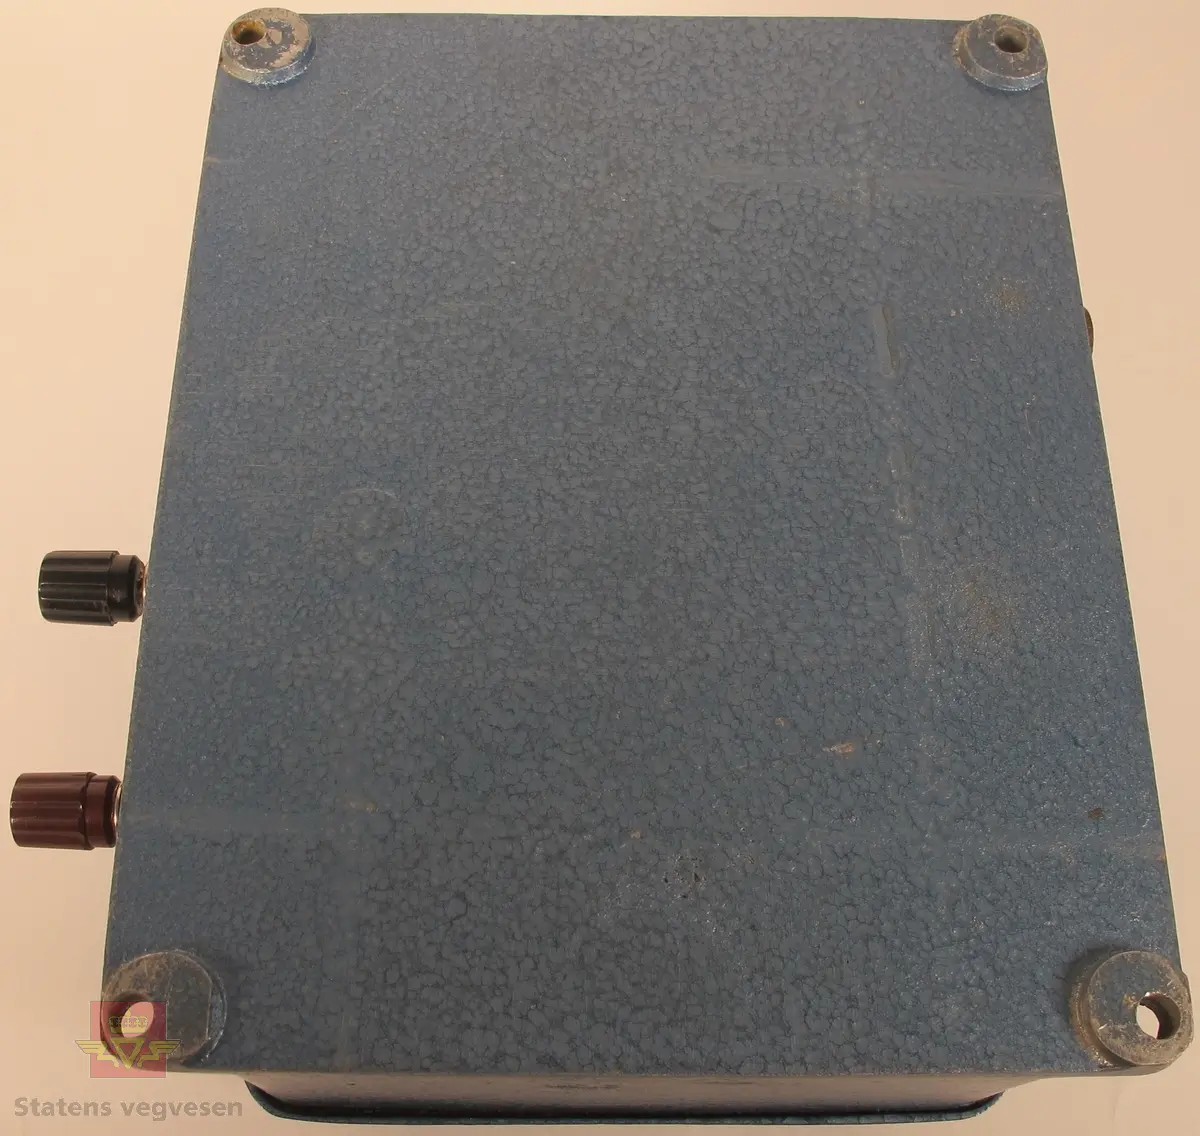 Detektor til lynvarsler i støpt aluminium, lakkert i blått. Detektoren har innskriftene WIDERÖE & BULL A/S INGENIØRFIRMA OSLO D Nr. 35 og TRIPPEL LYNVARSLER på metallplater. Boksen har fire tilkoblingspunkter for kabler, og fire hull for vertikal opphengning.